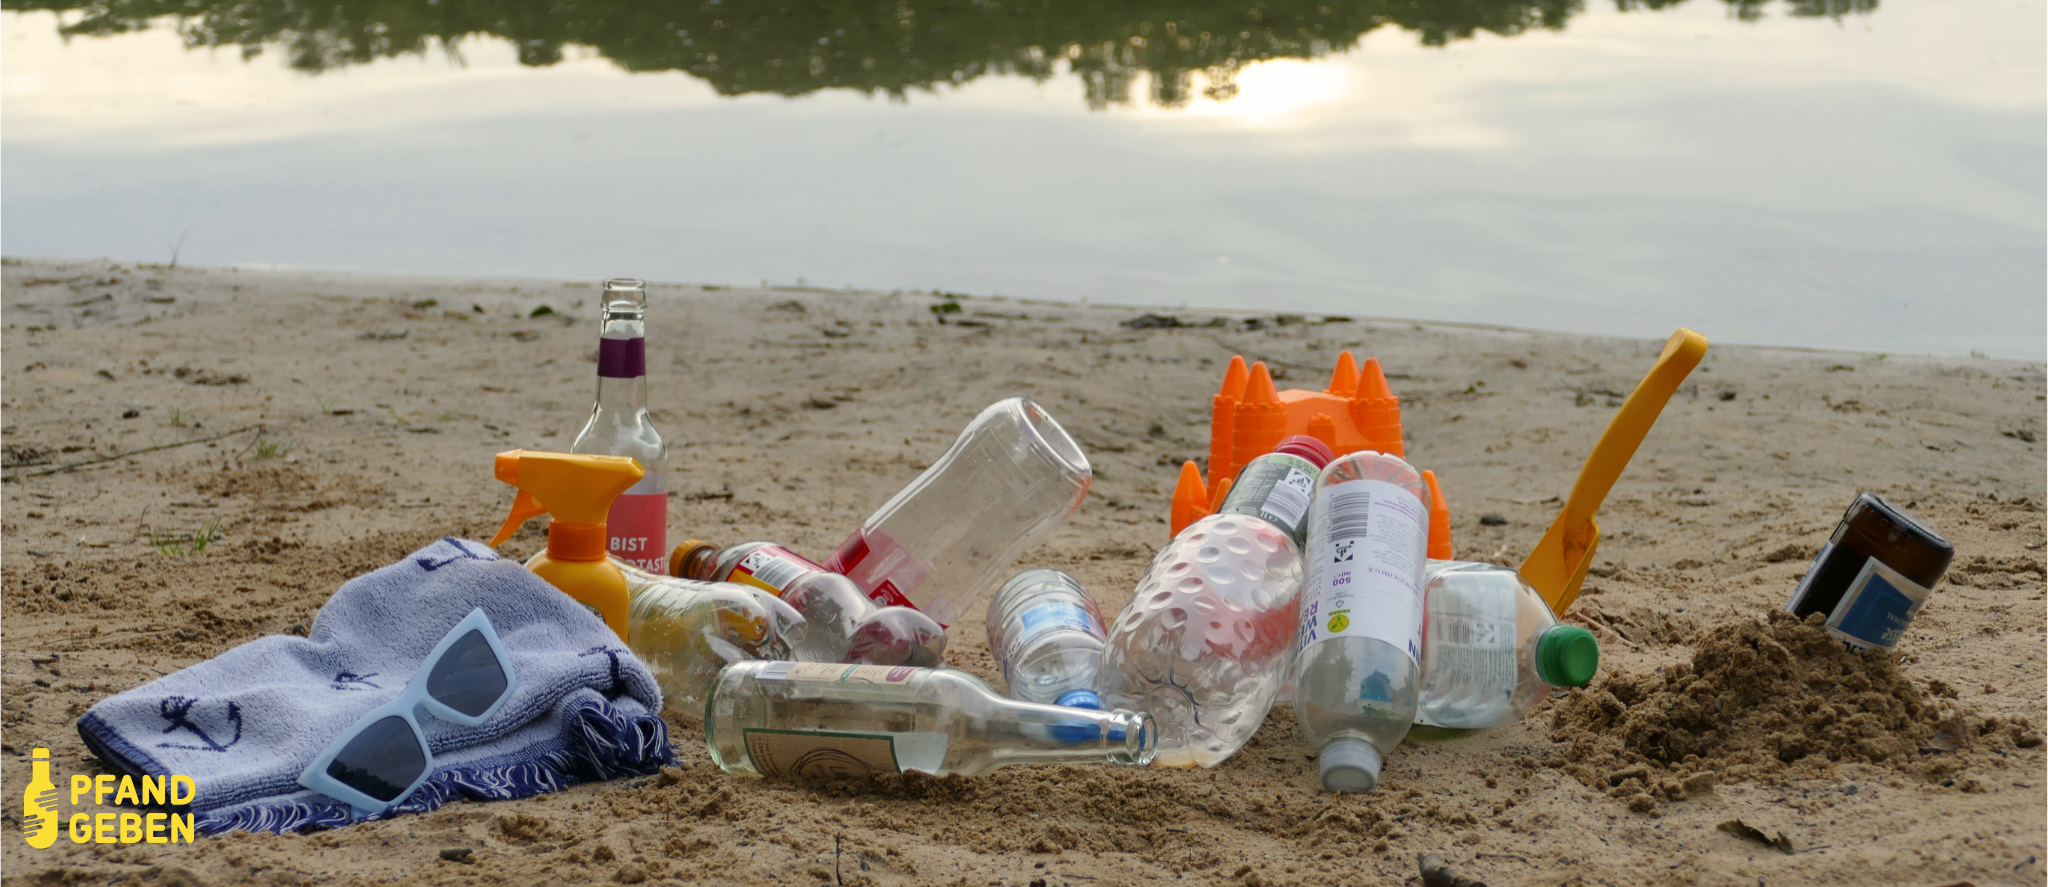 Foto von einem See mit Sandstrand beim Sonnenuntergang. Im Sand liegen verschiedene leere Pfandflaschen, ein Handtuch und eine Sonnenbrille.